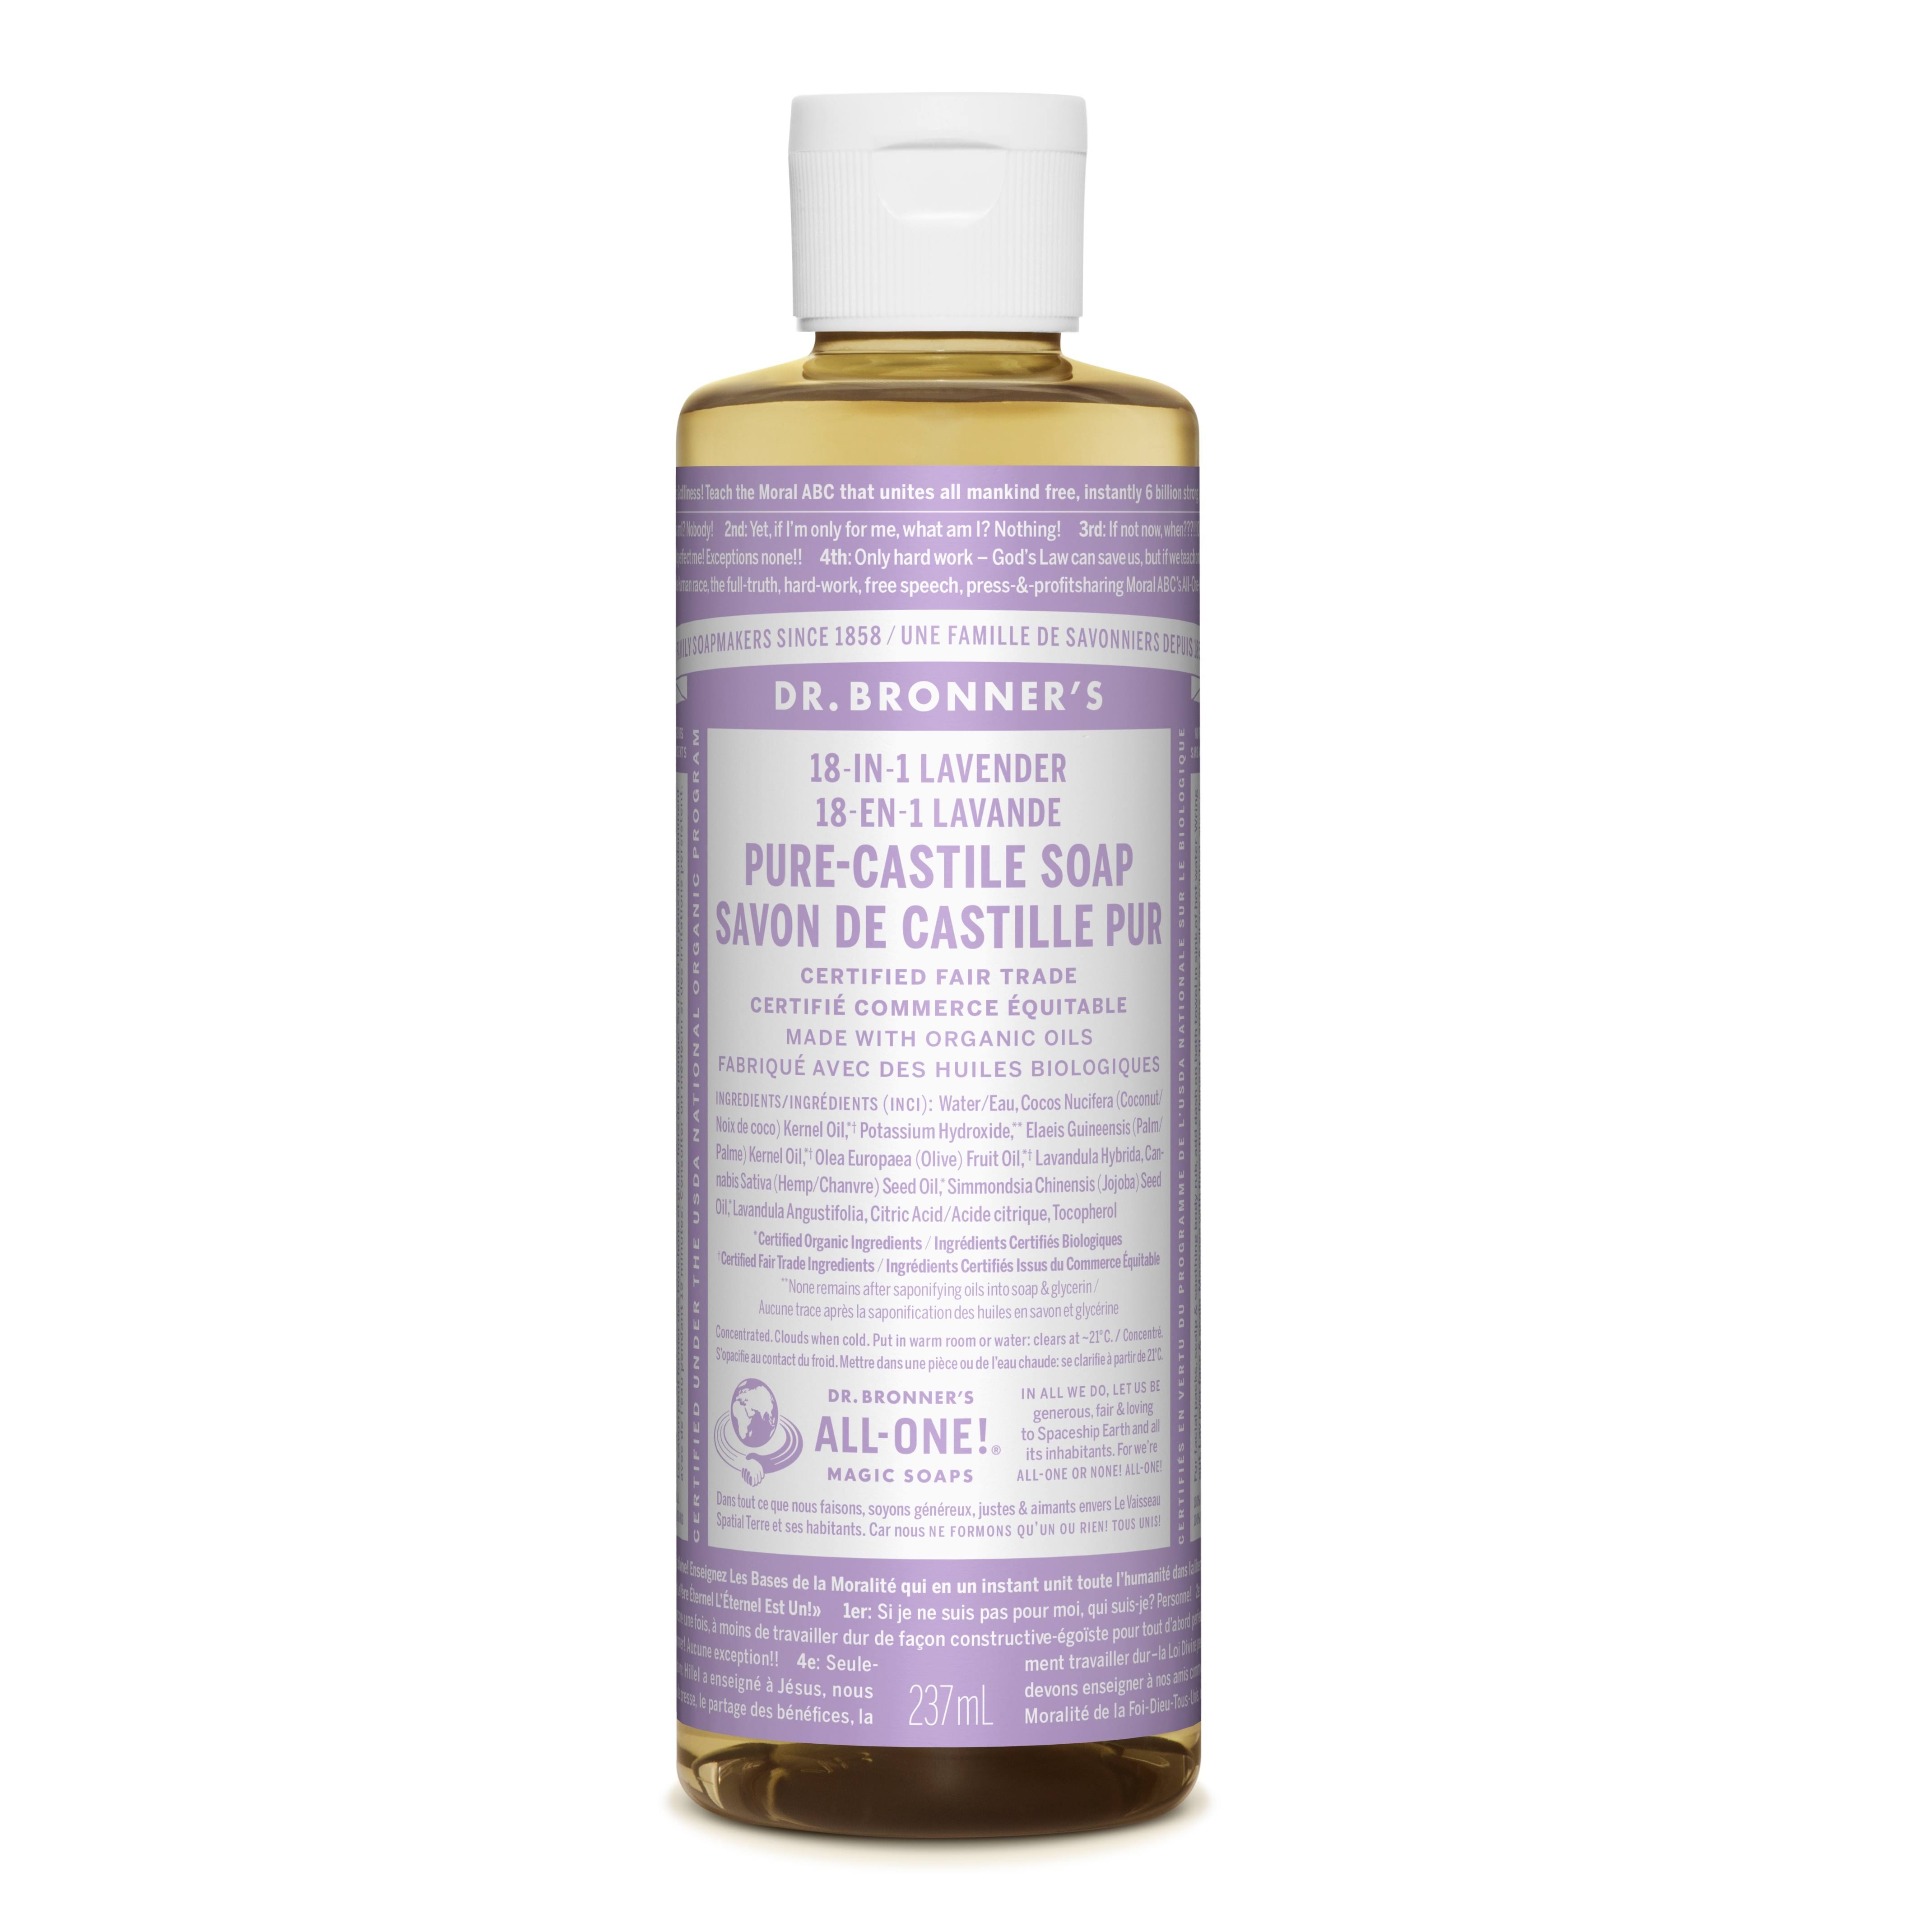 Dr. Bronner's Classic Pure-Castile Soap - Lavender